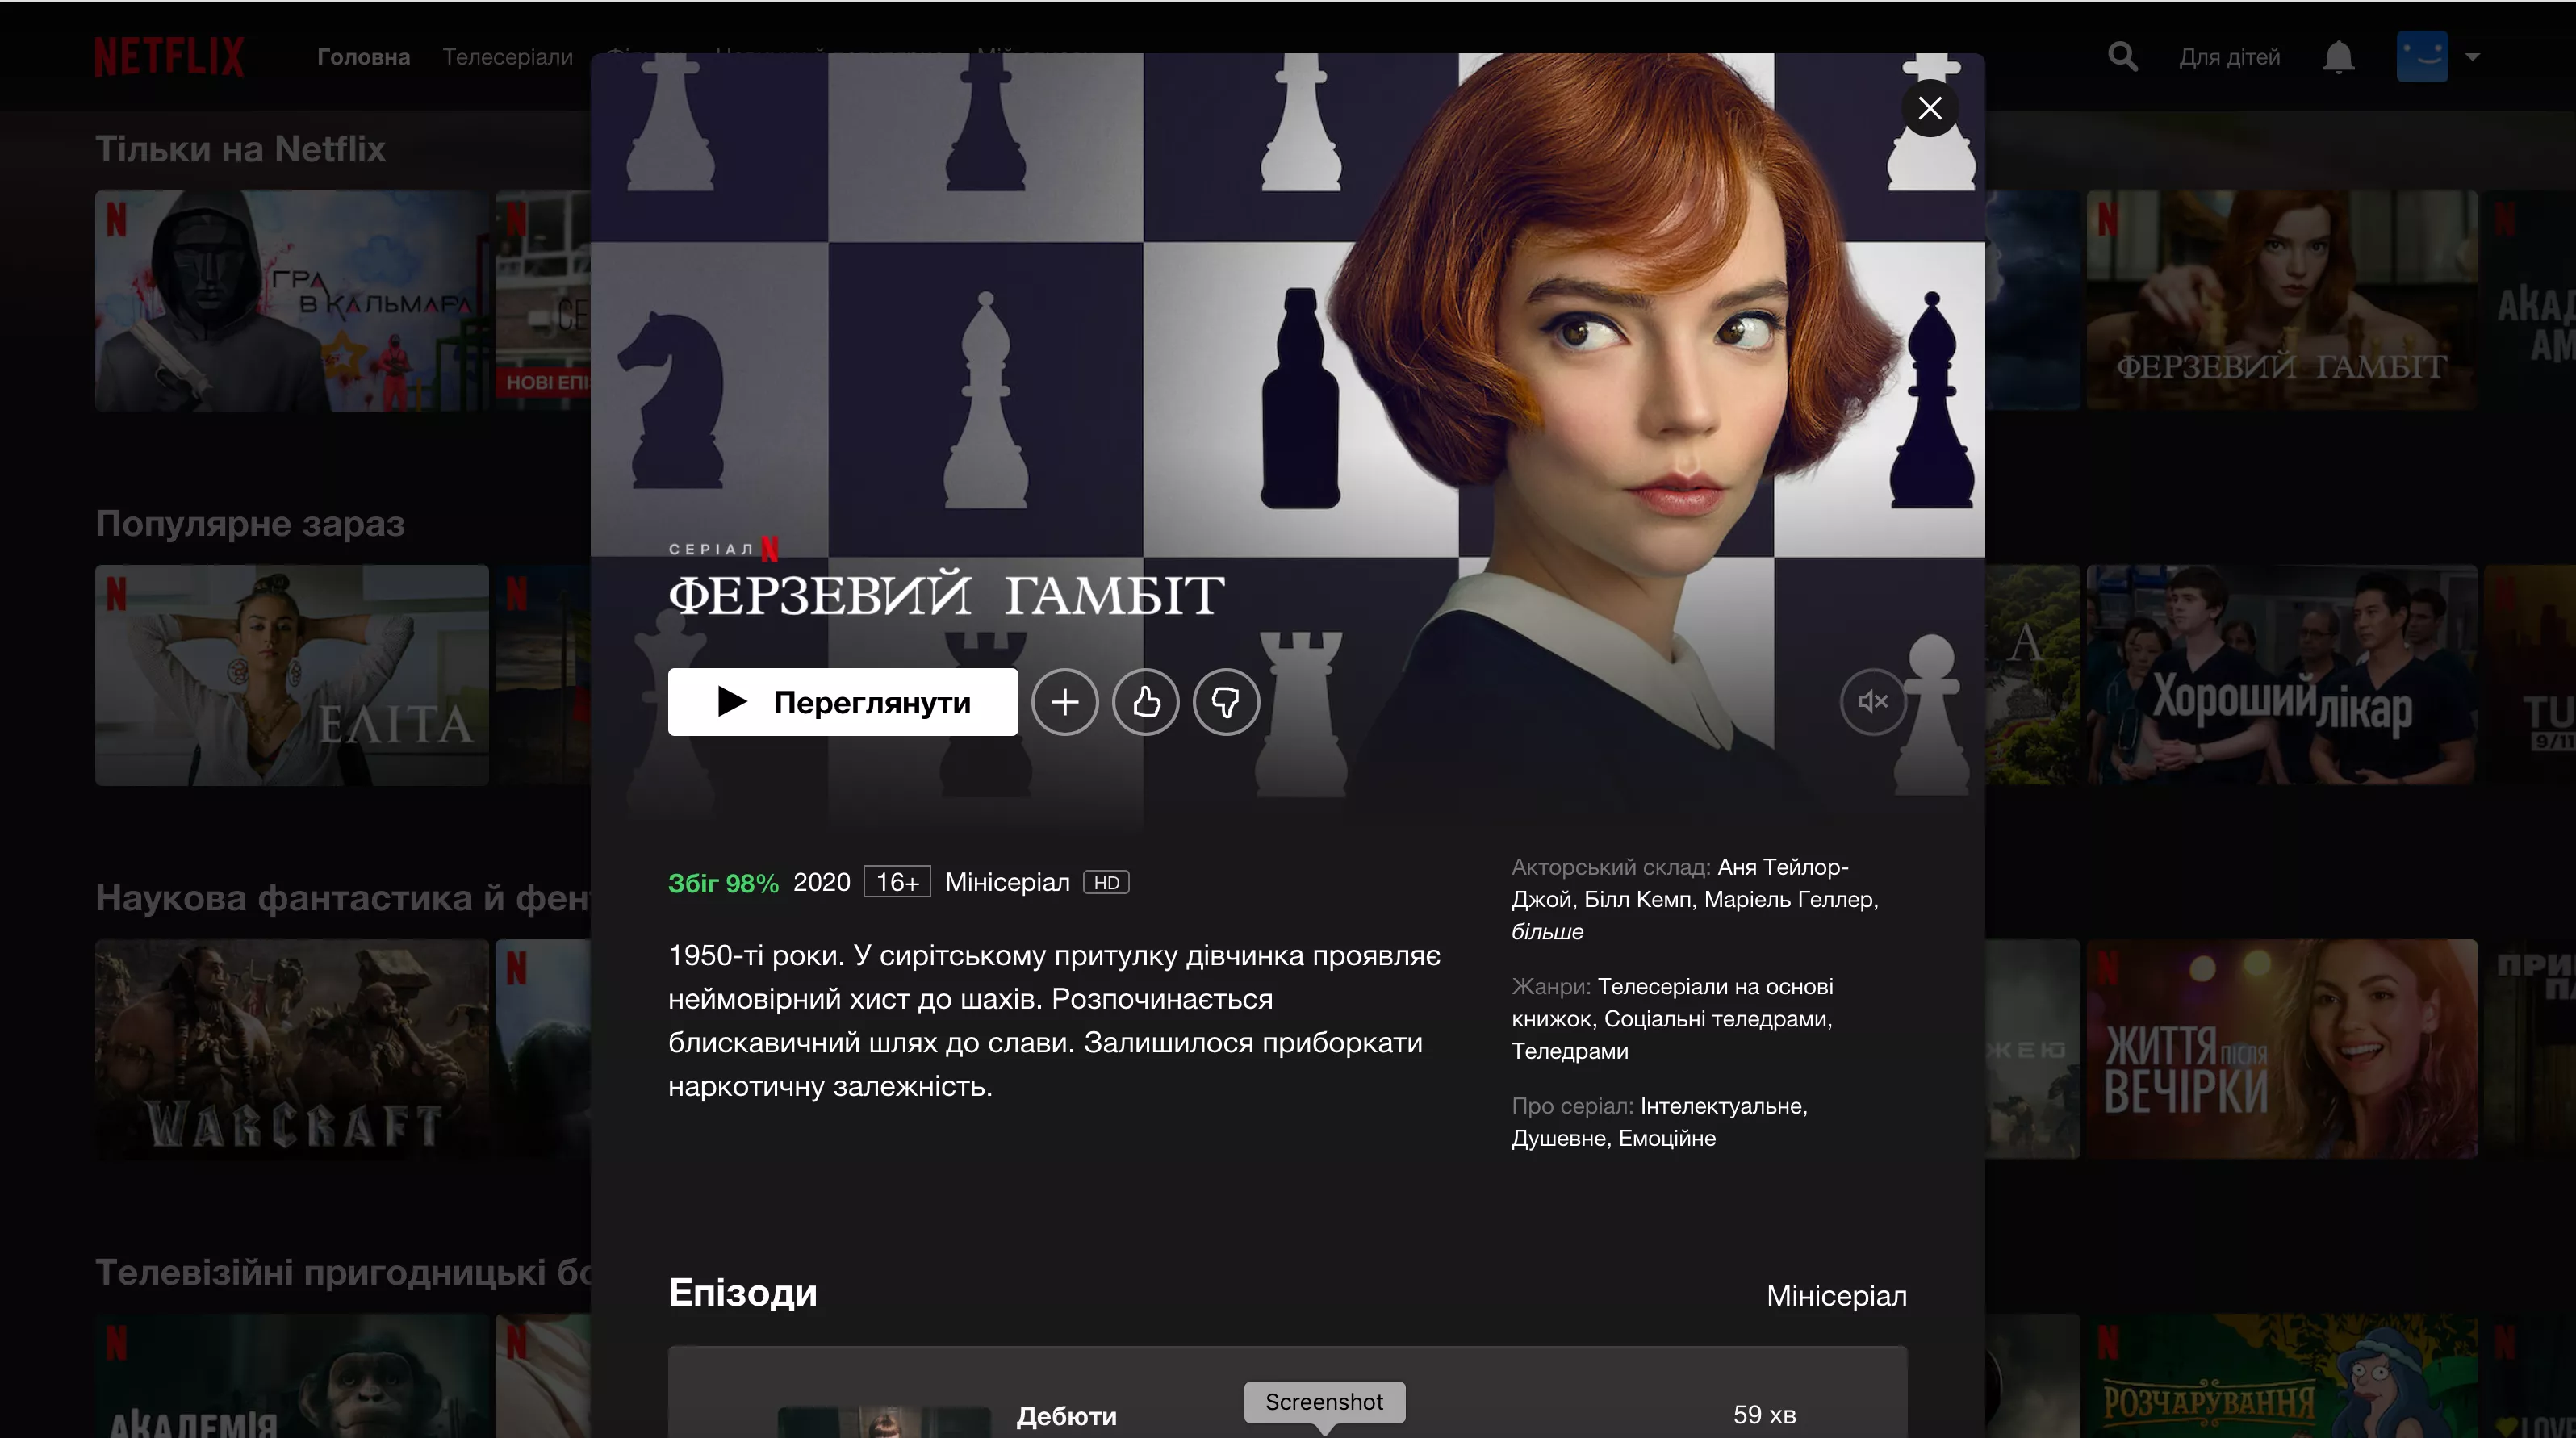 "Ход королевы" и другие сериалы на украинском языке на Netflix